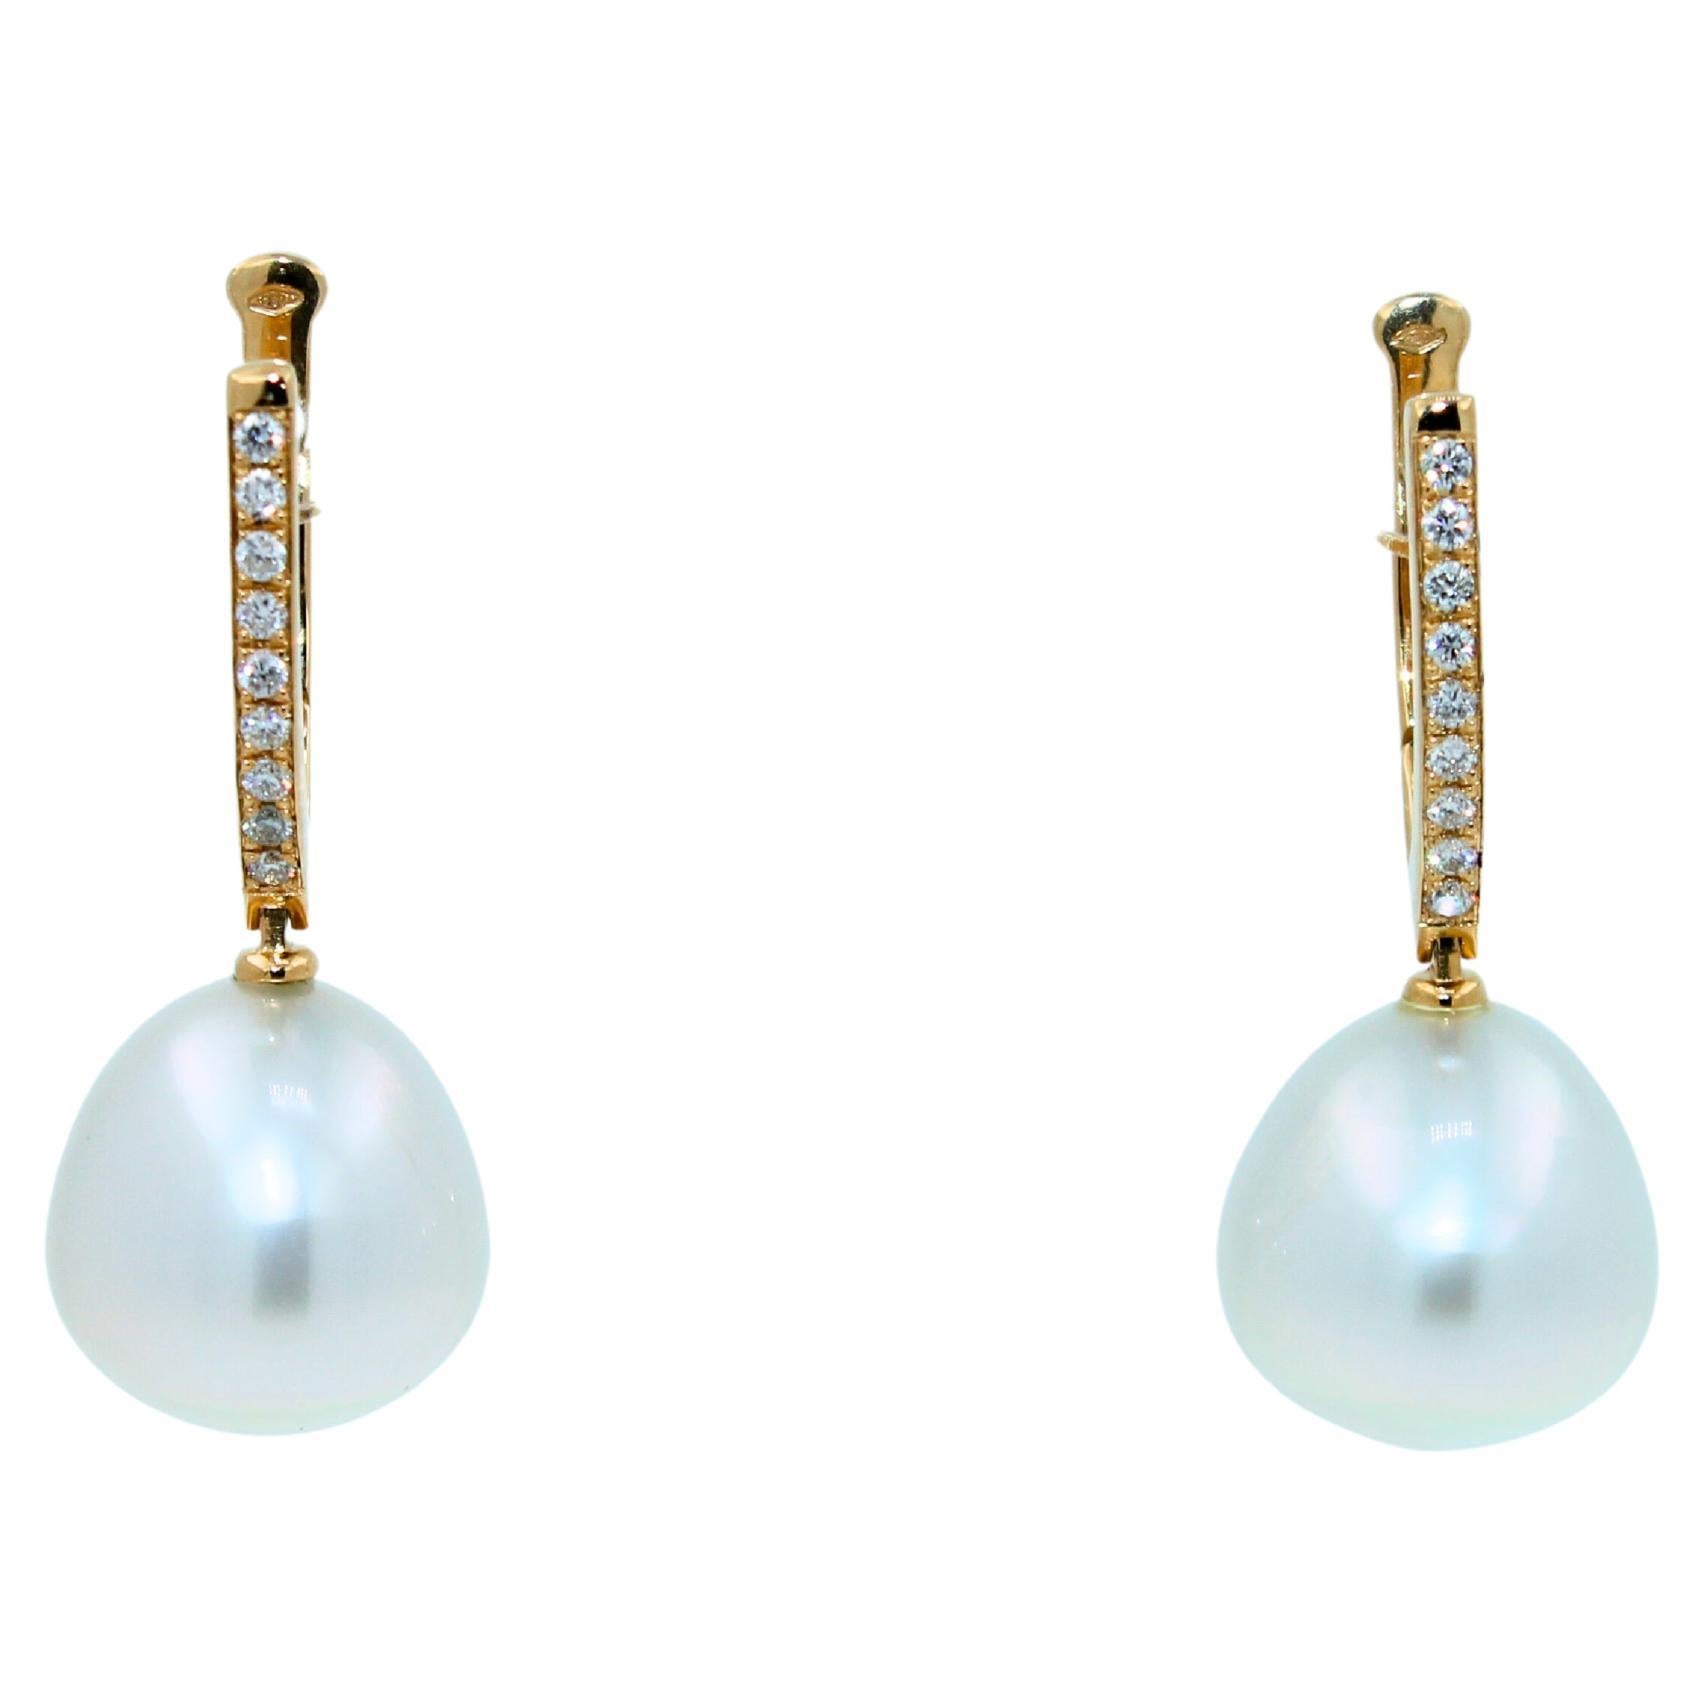 Südsee-Weiße Perle Diamant-Ohrringe aus 18 Karat Gelbgold mit Scharnier